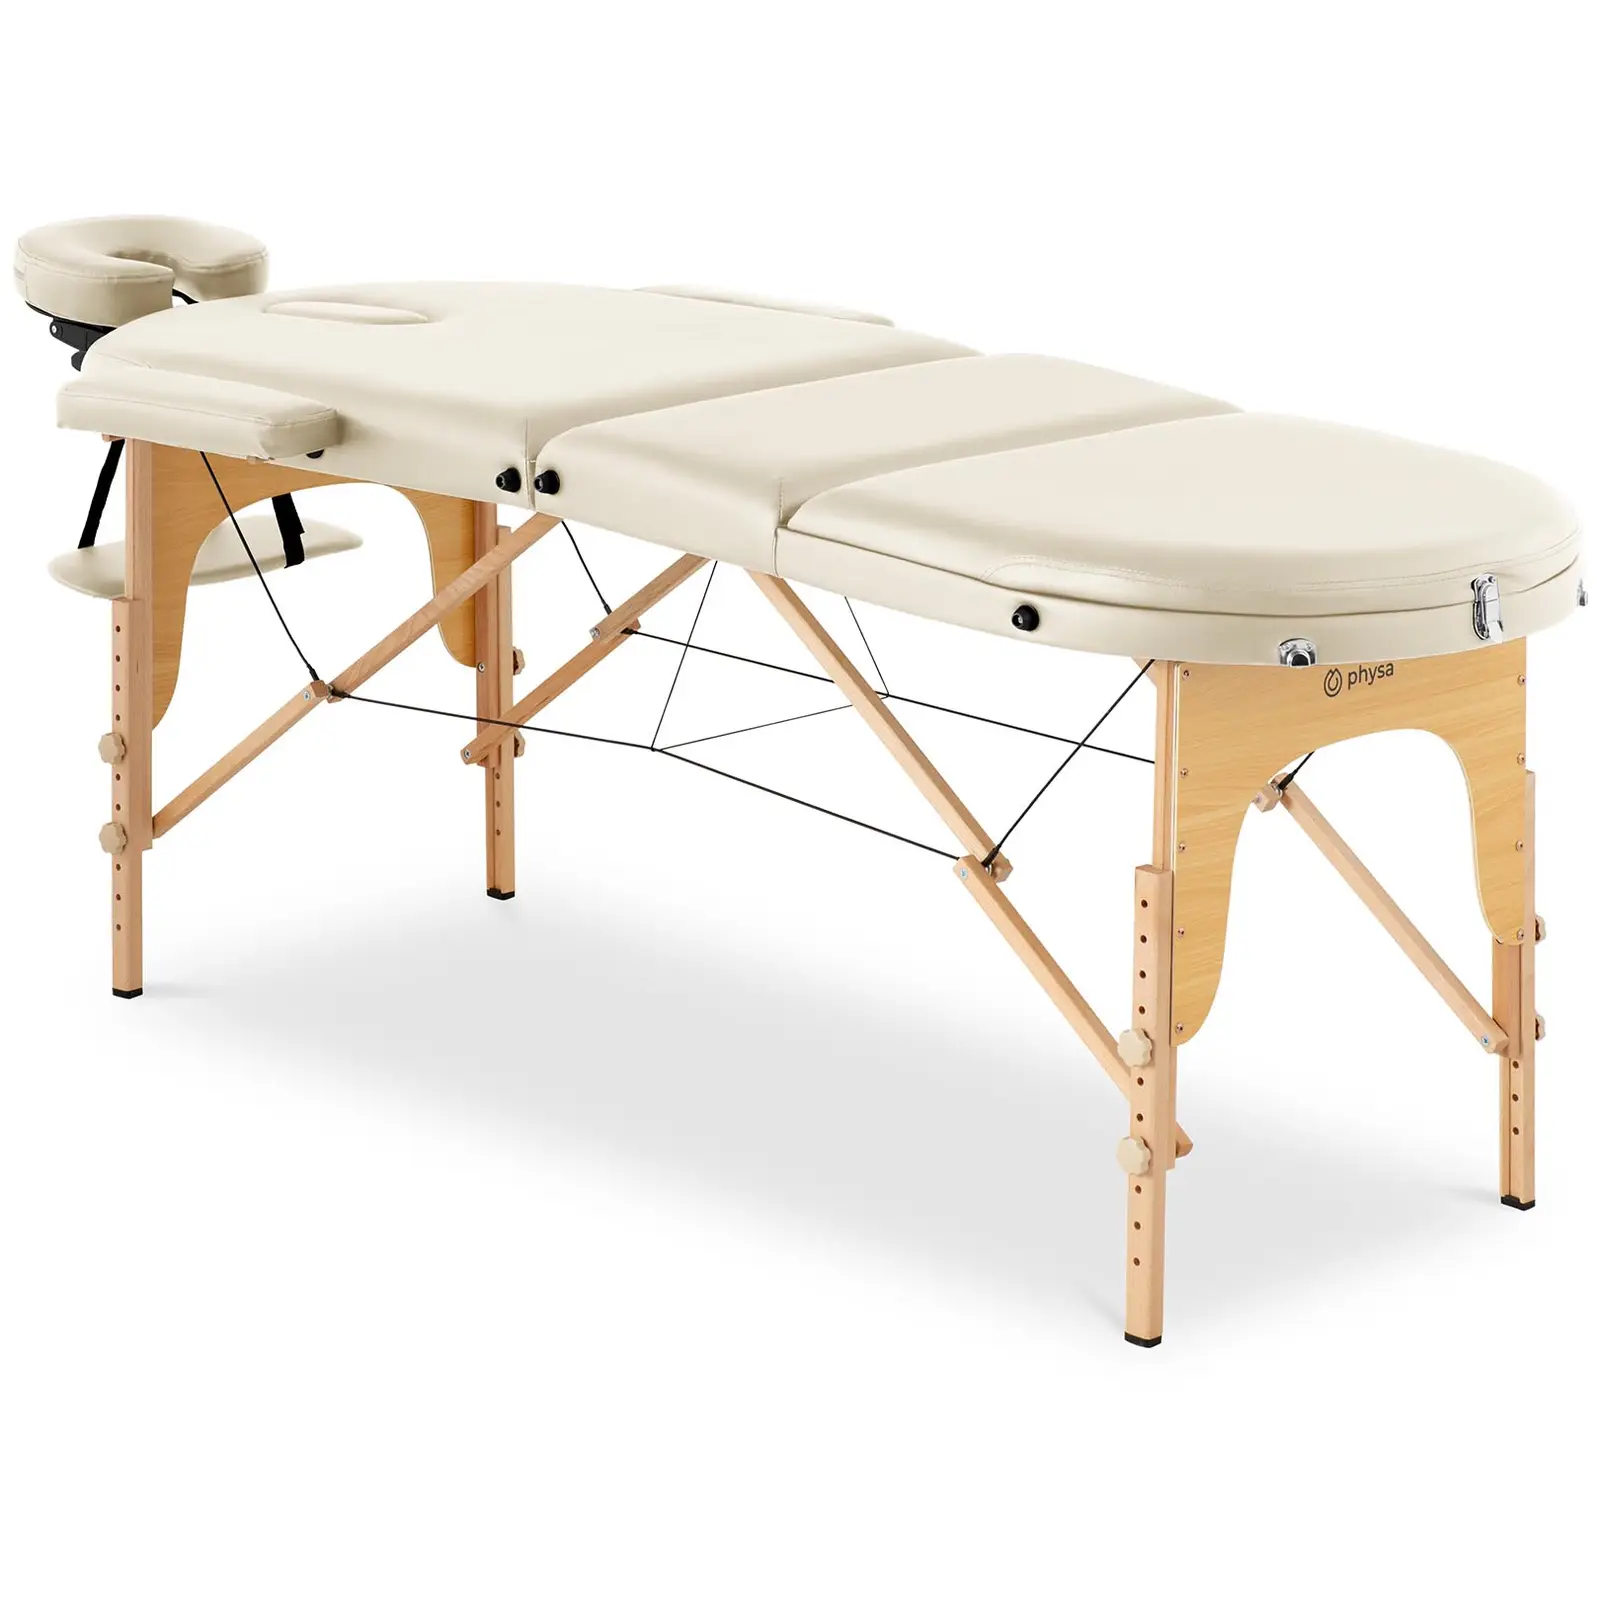 Πτυσσόμενο τραπέζι μασάζ - 185-211 x 70-88 x 63-85 cm - 227 kg - Beige